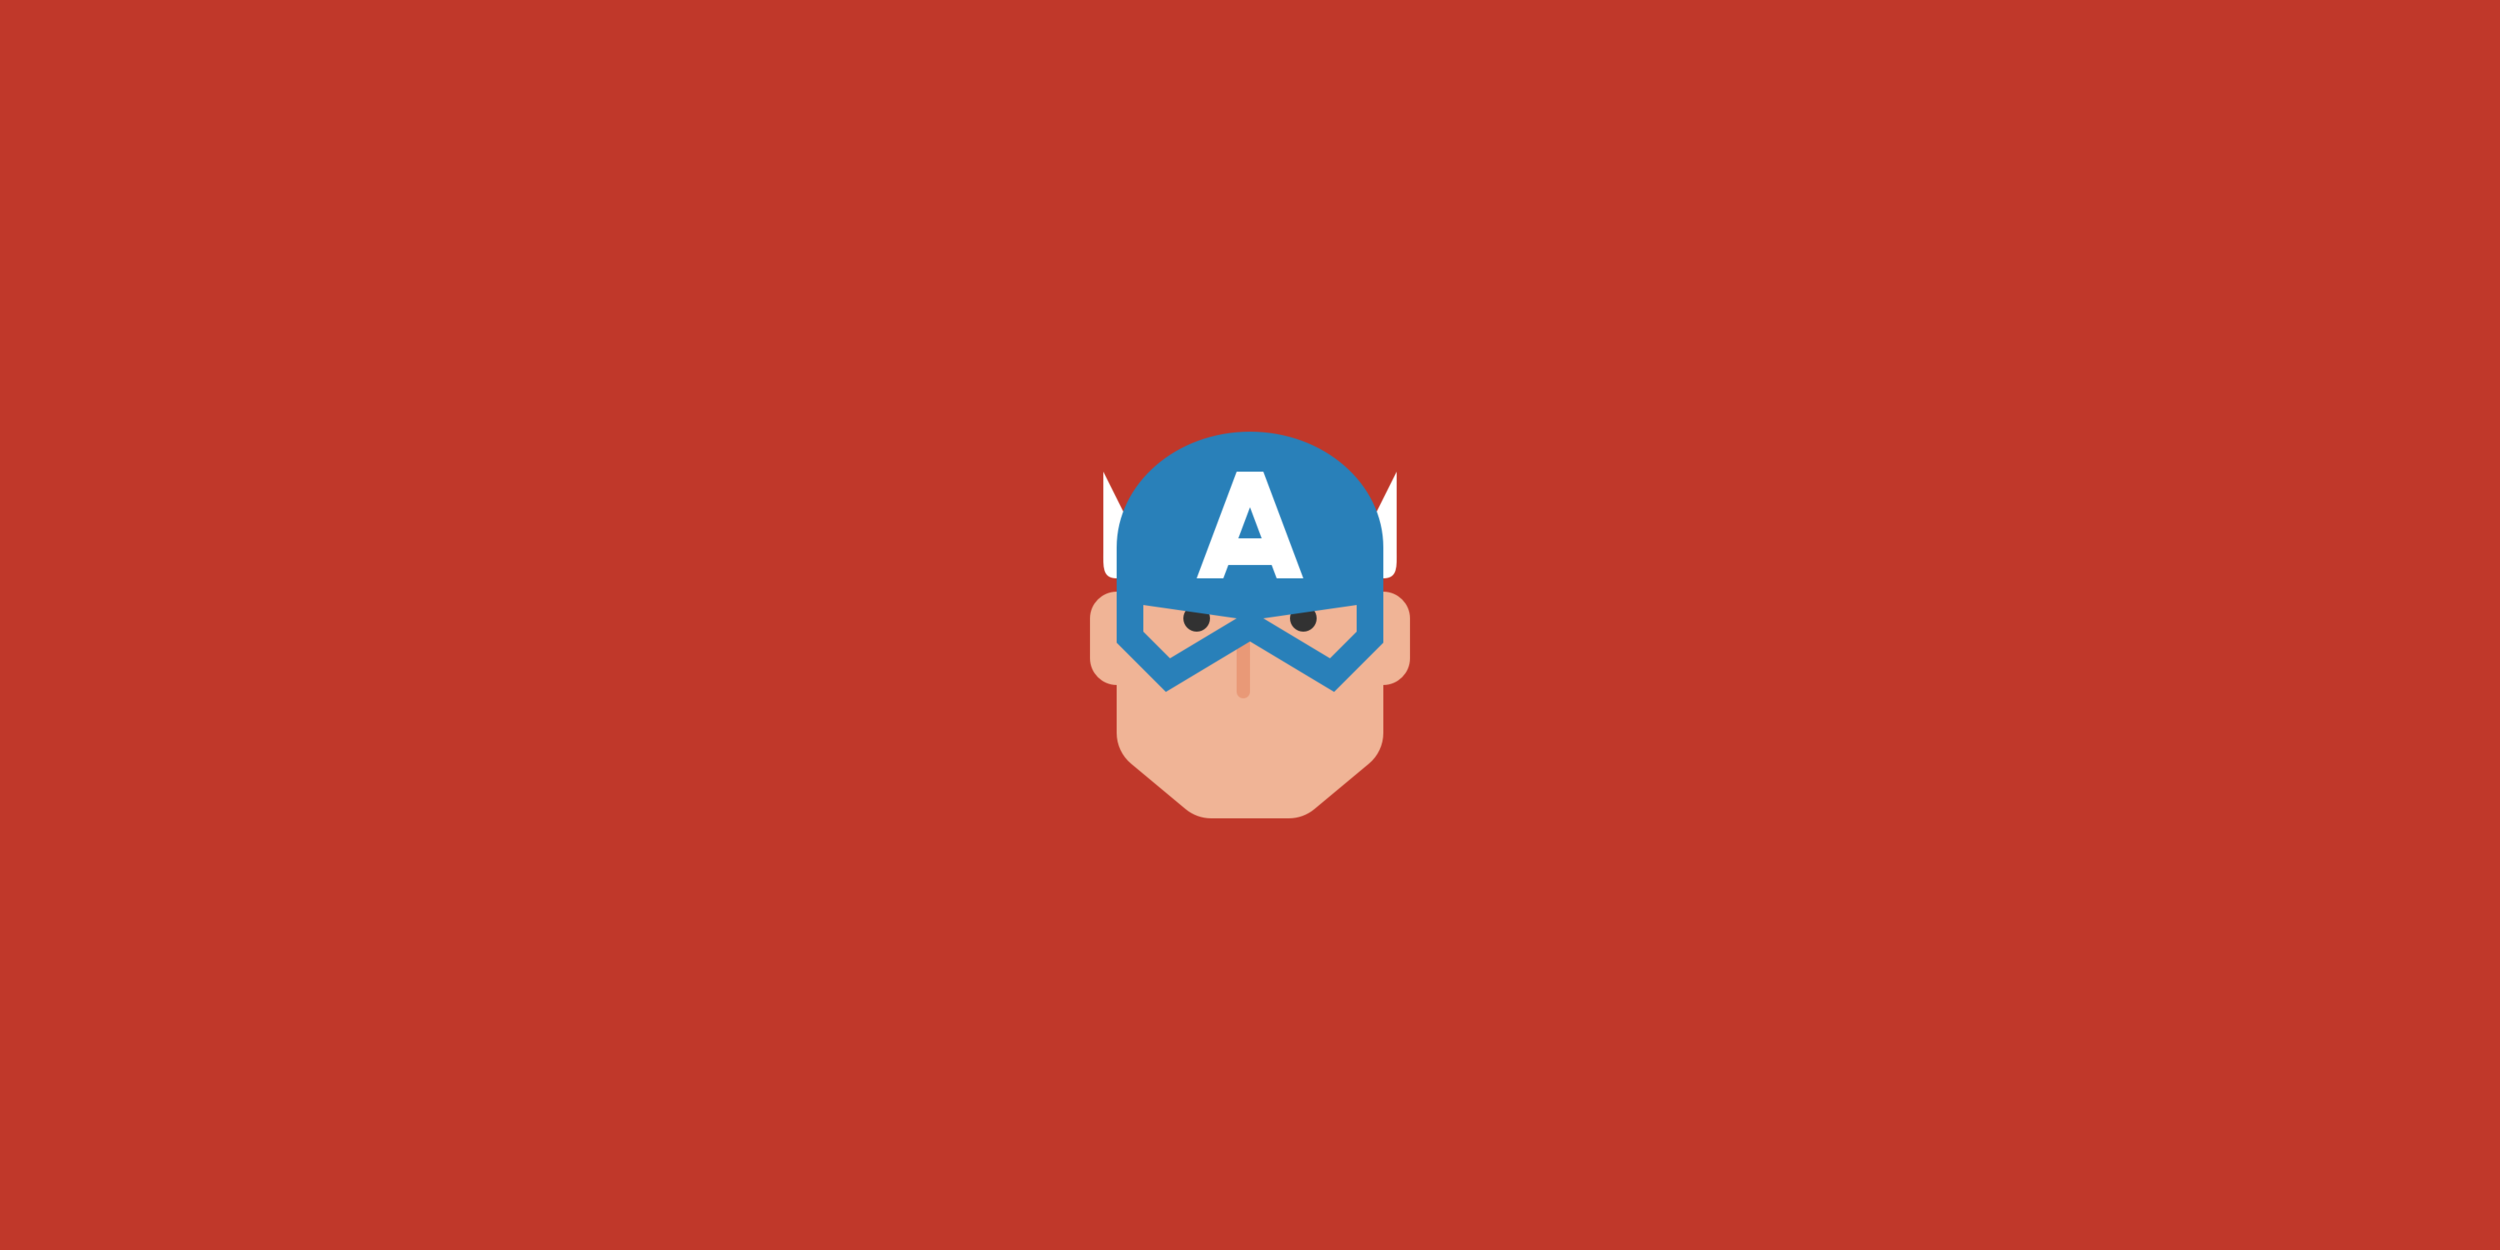 Captain America Icon